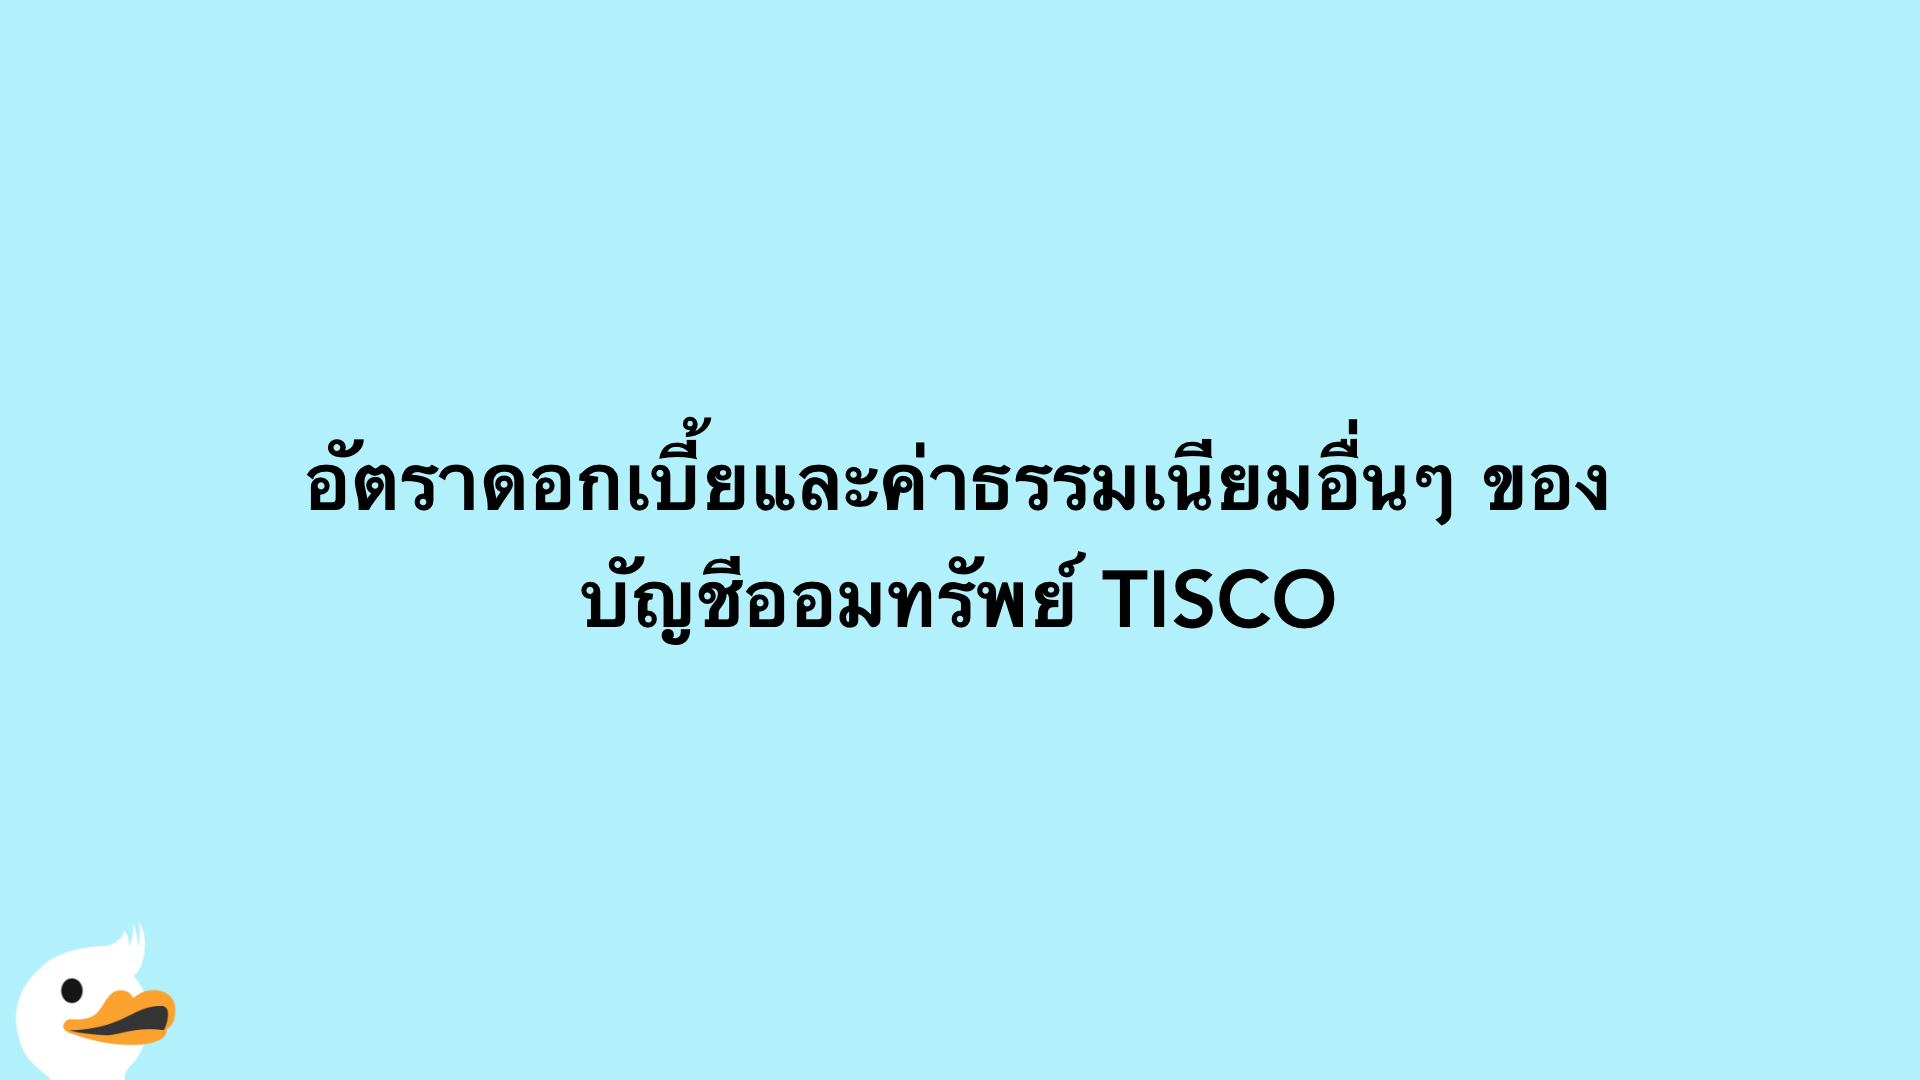 อัตราดอกเบี้ยและค่าธรรมเนียมอื่นๆ ของ บัญชีออมทรัพย์ TISCO